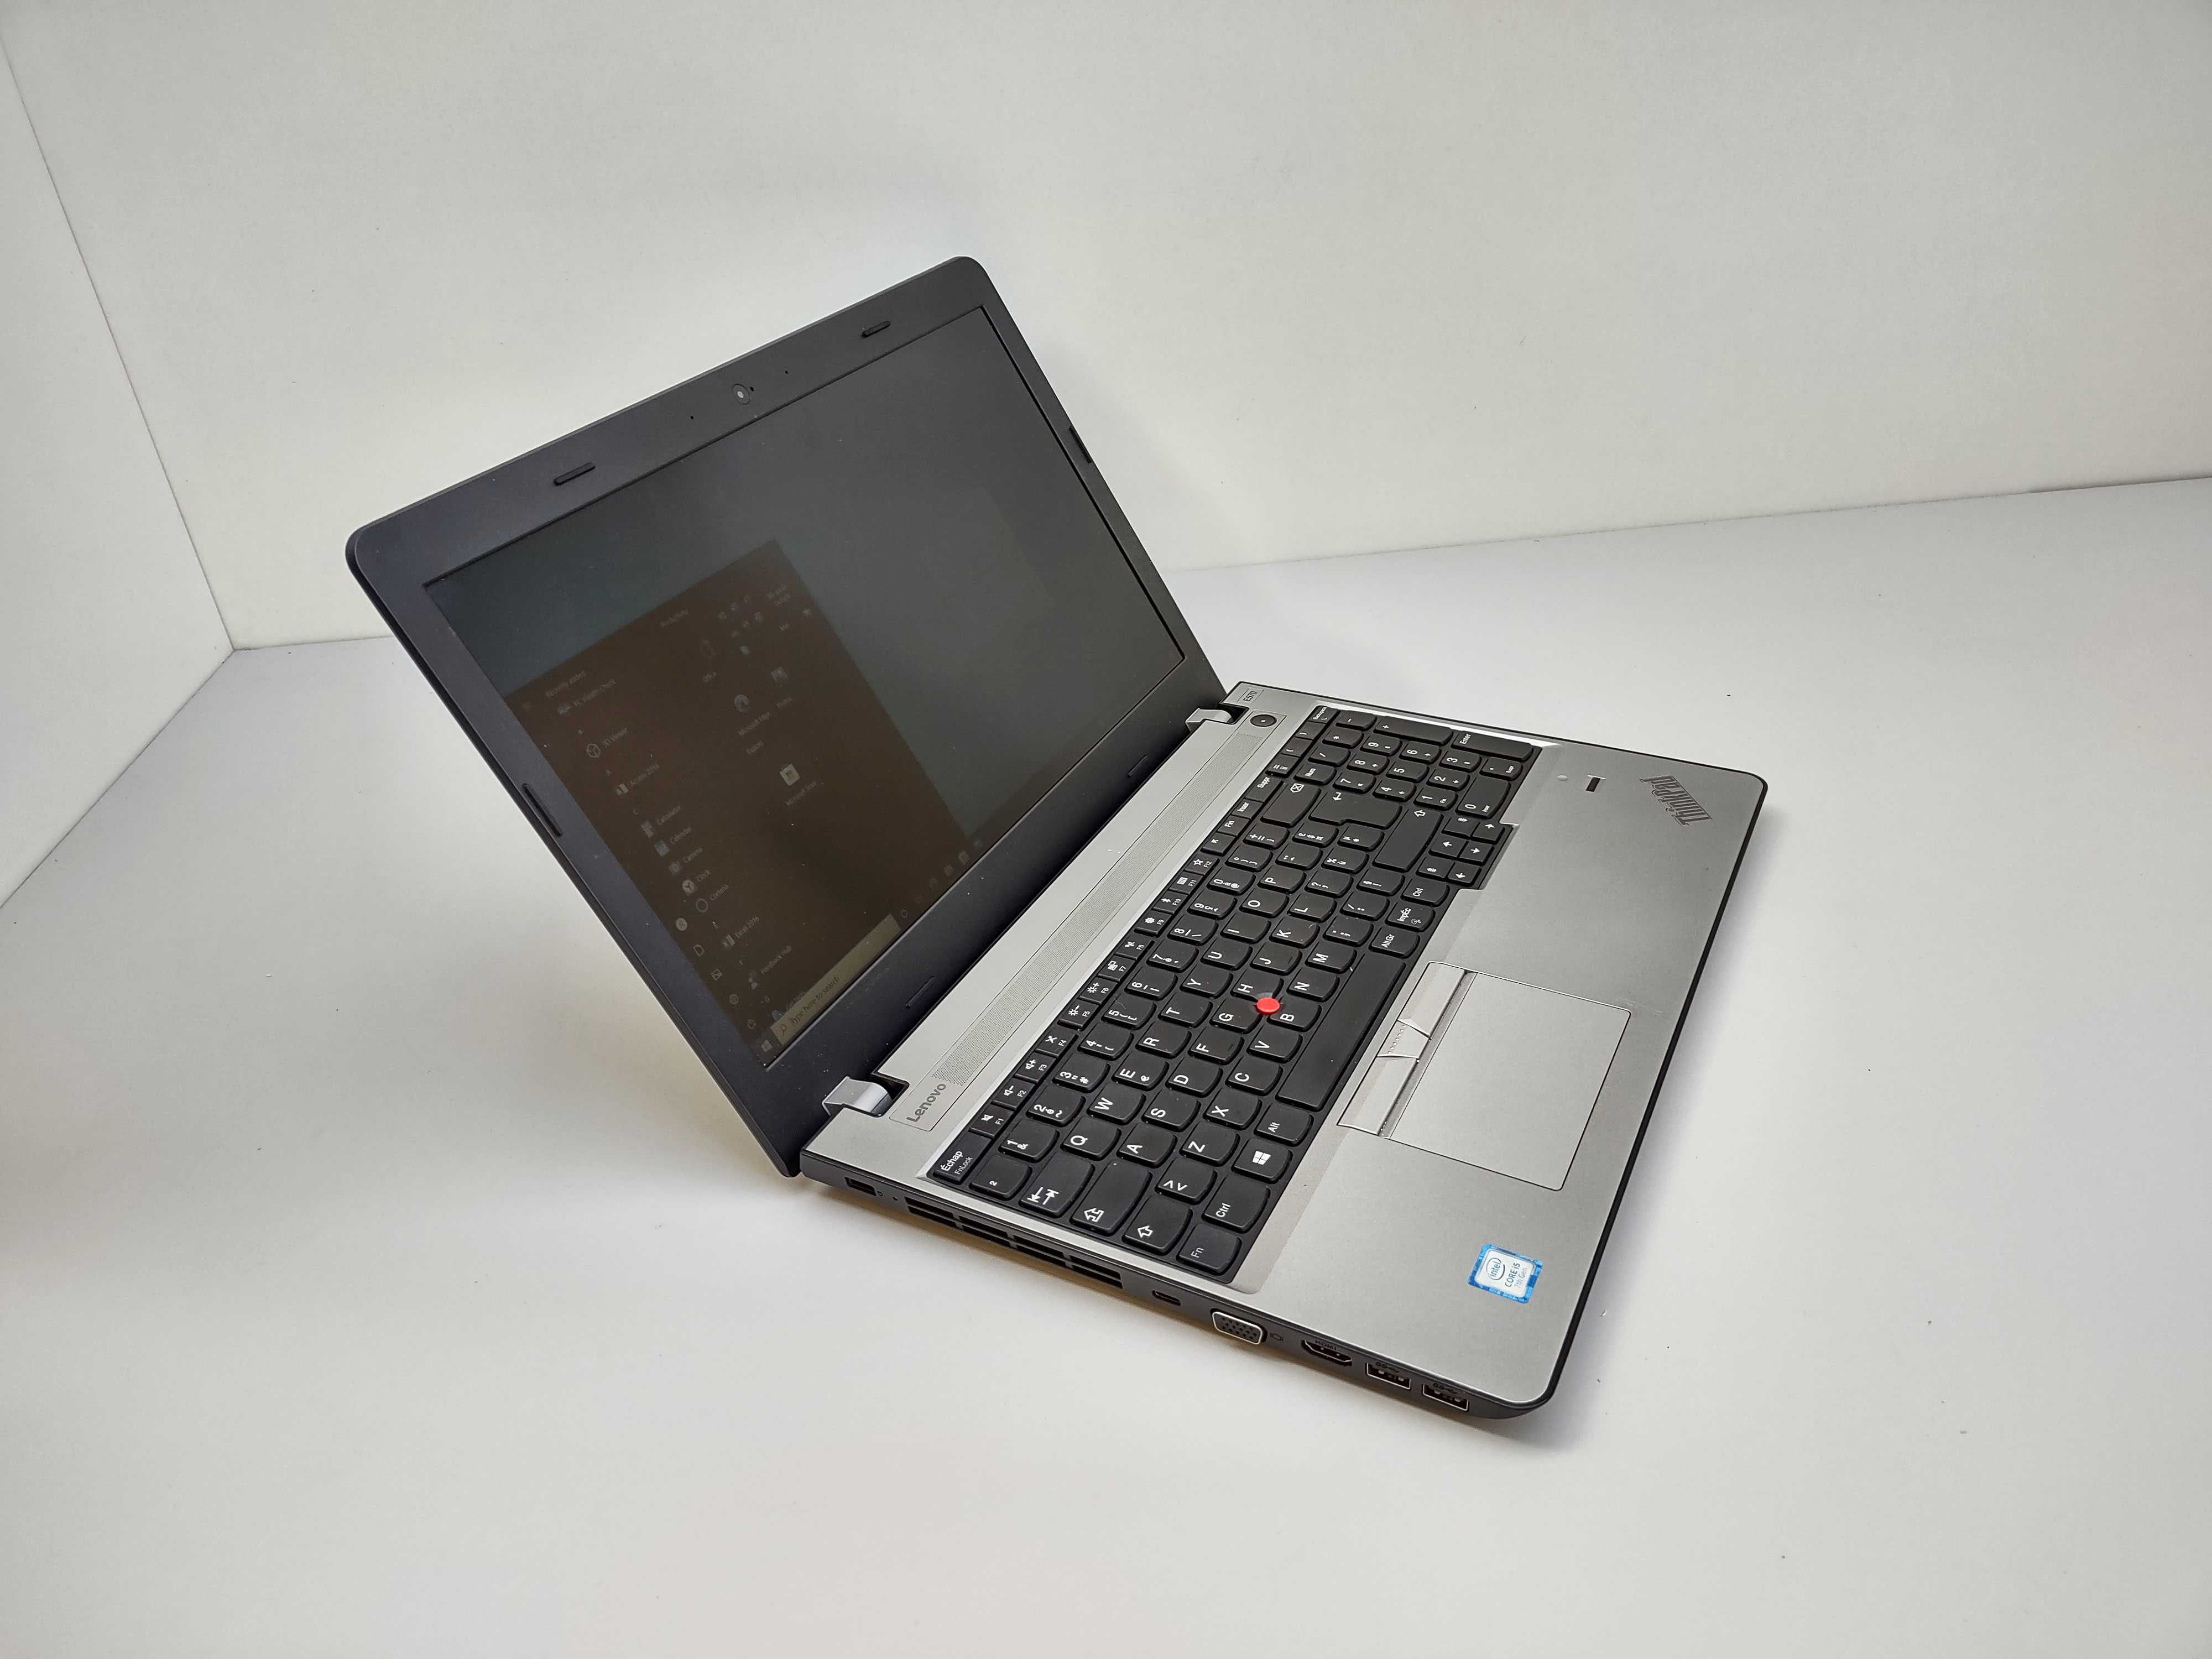 Lenovo ThinkPad E570 FHD i5 7200U 8 GB DDR4 128 GB SSD + 500 GB HDD